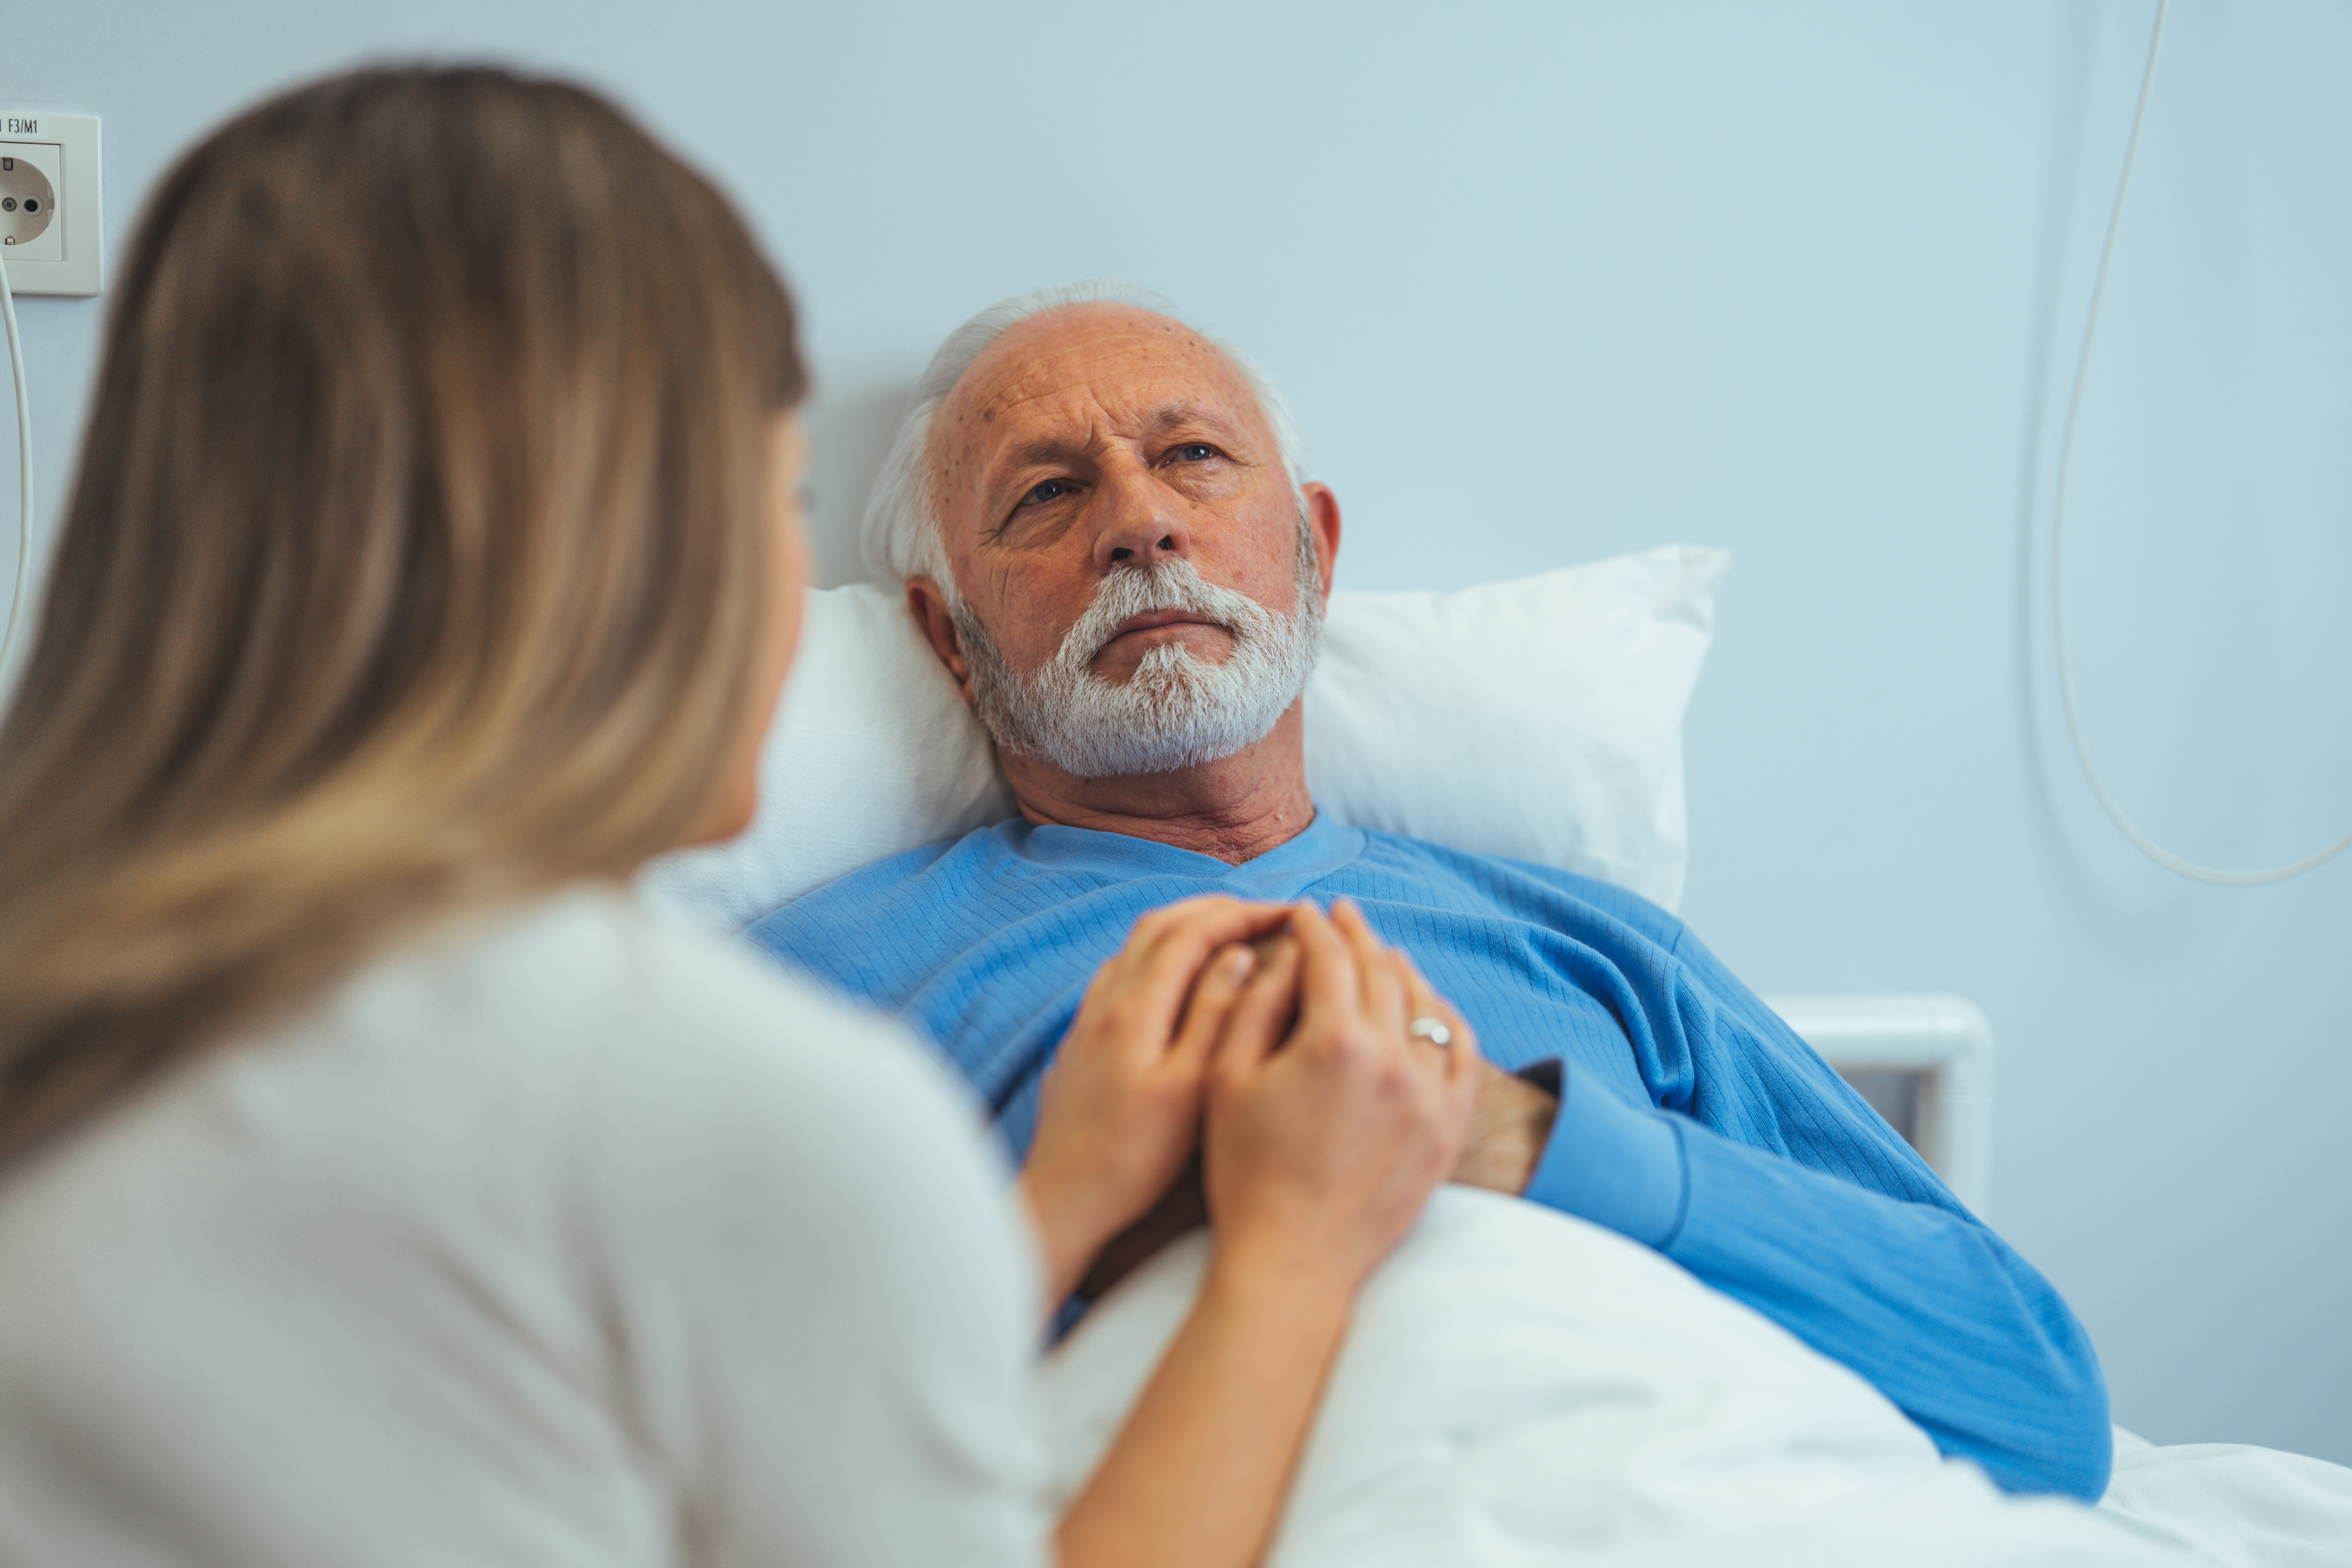 Una mujer visita a un hombre mayor en una habitación de hospital | Fuente: Shutterstock